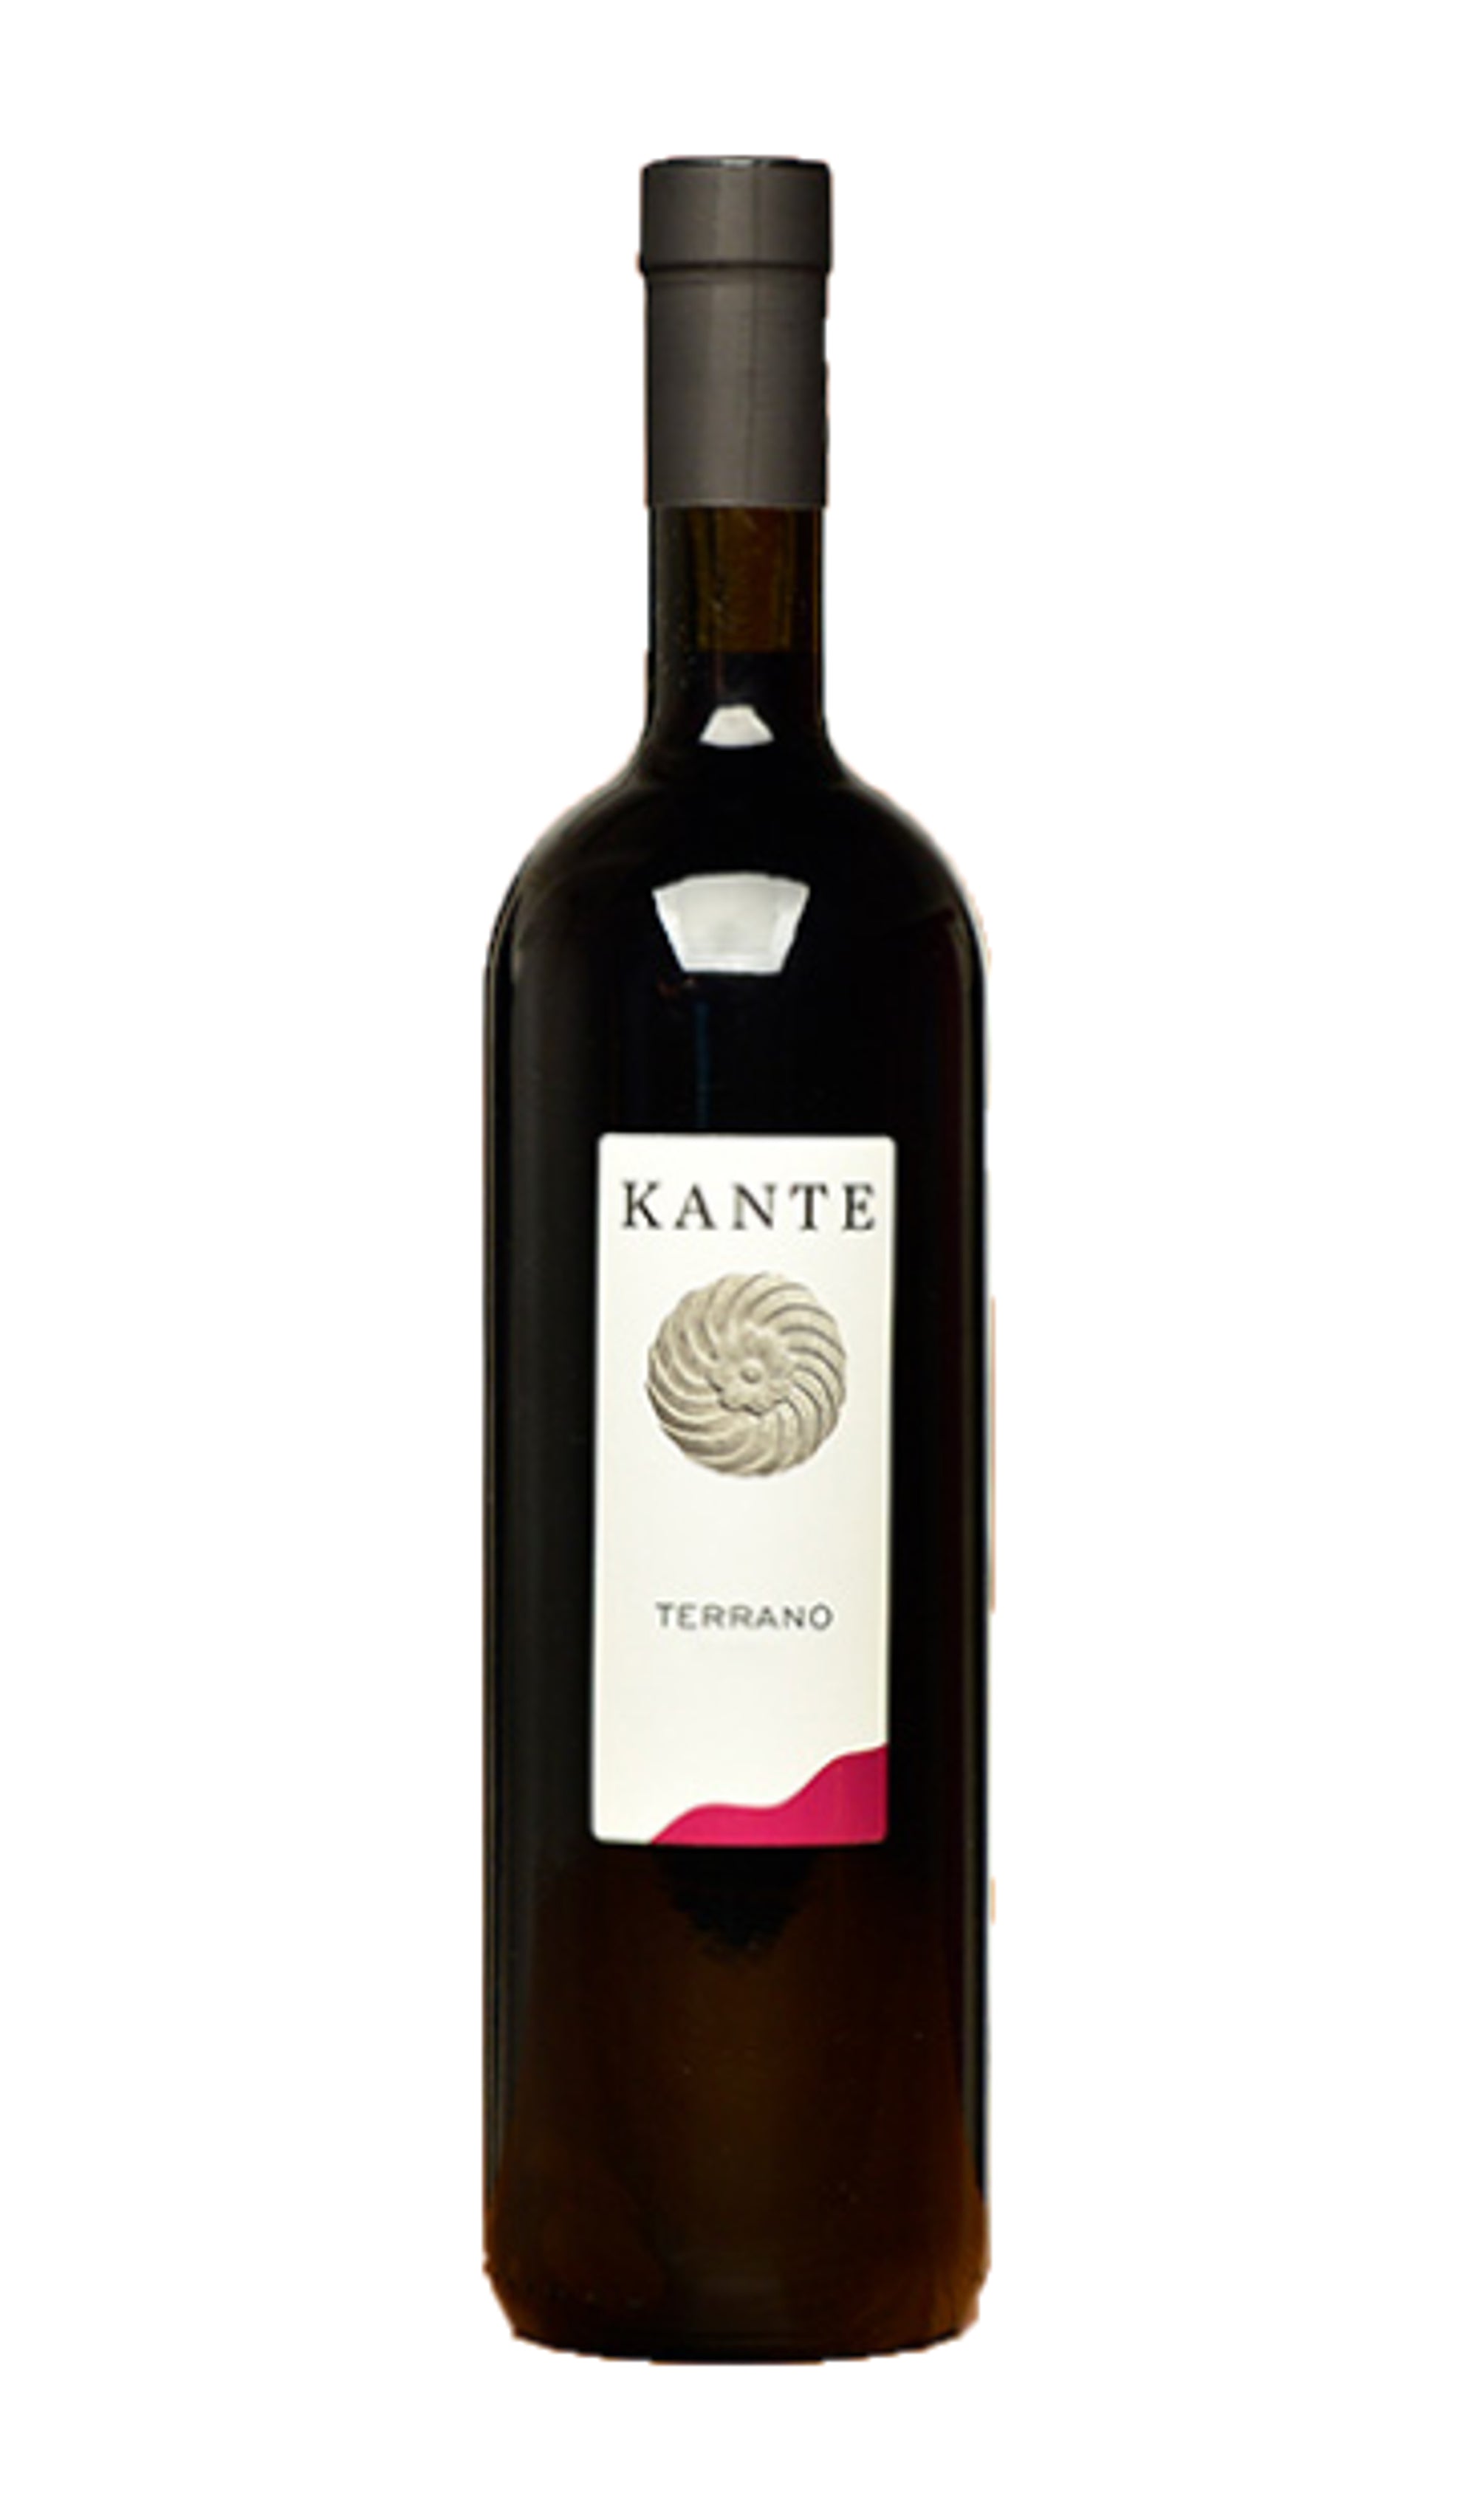 Kante - “Terrano” Venezia Giulia Red Wine 2014 (750ml)